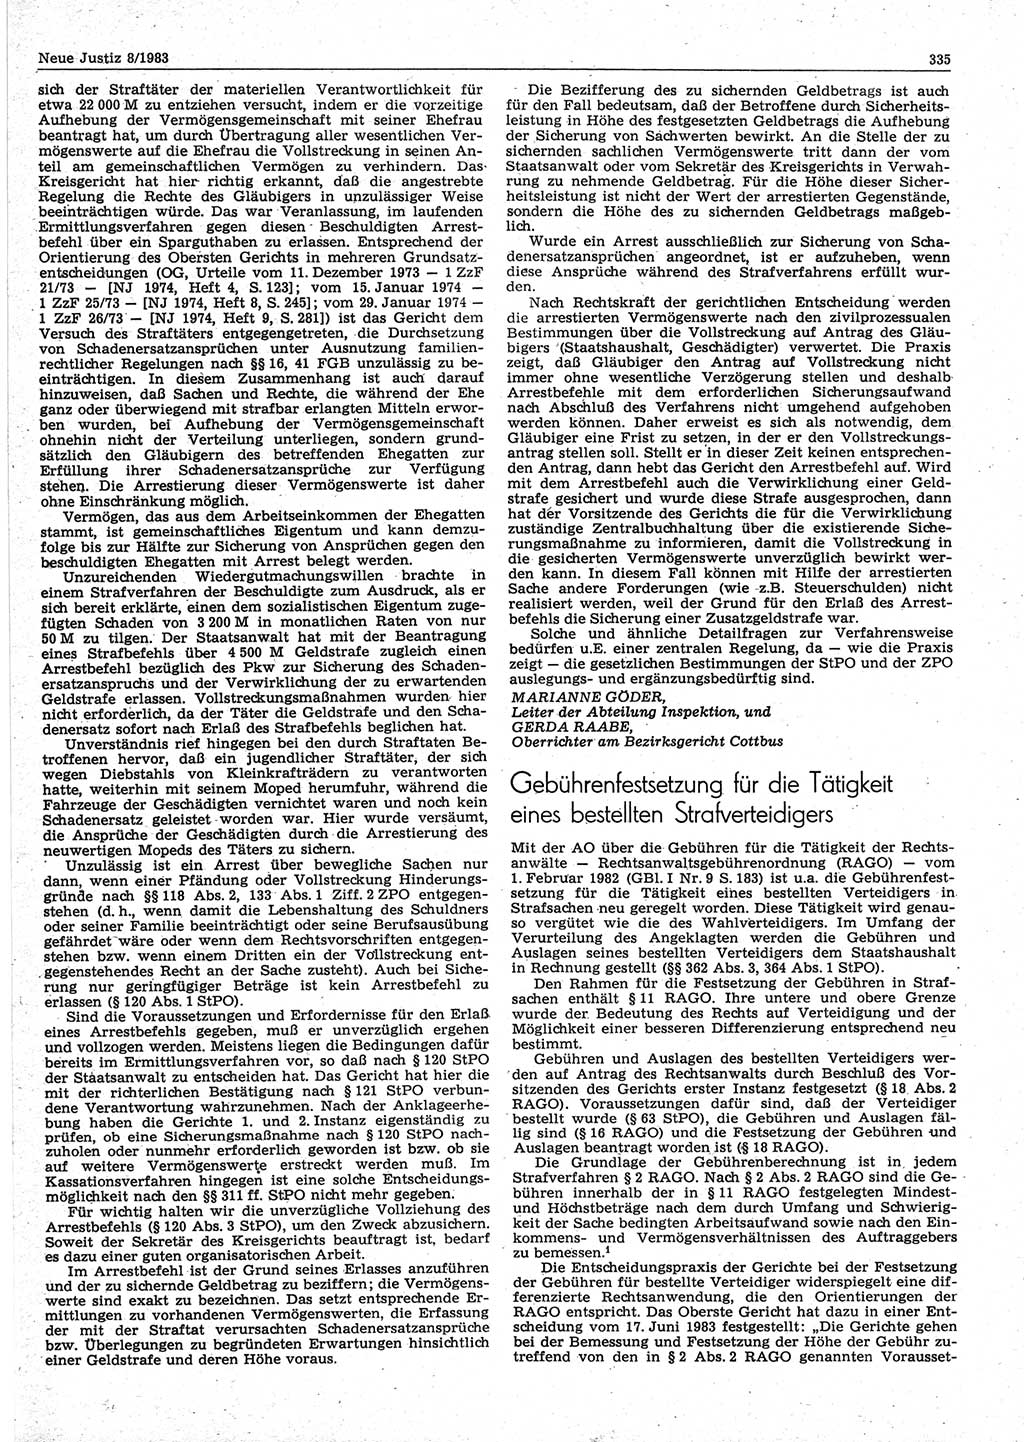 Neue Justiz (NJ), Zeitschrift für sozialistisches Recht und Gesetzlichkeit [Deutsche Demokratische Republik (DDR)], 37. Jahrgang 1983, Seite 335 (NJ DDR 1983, S. 335)